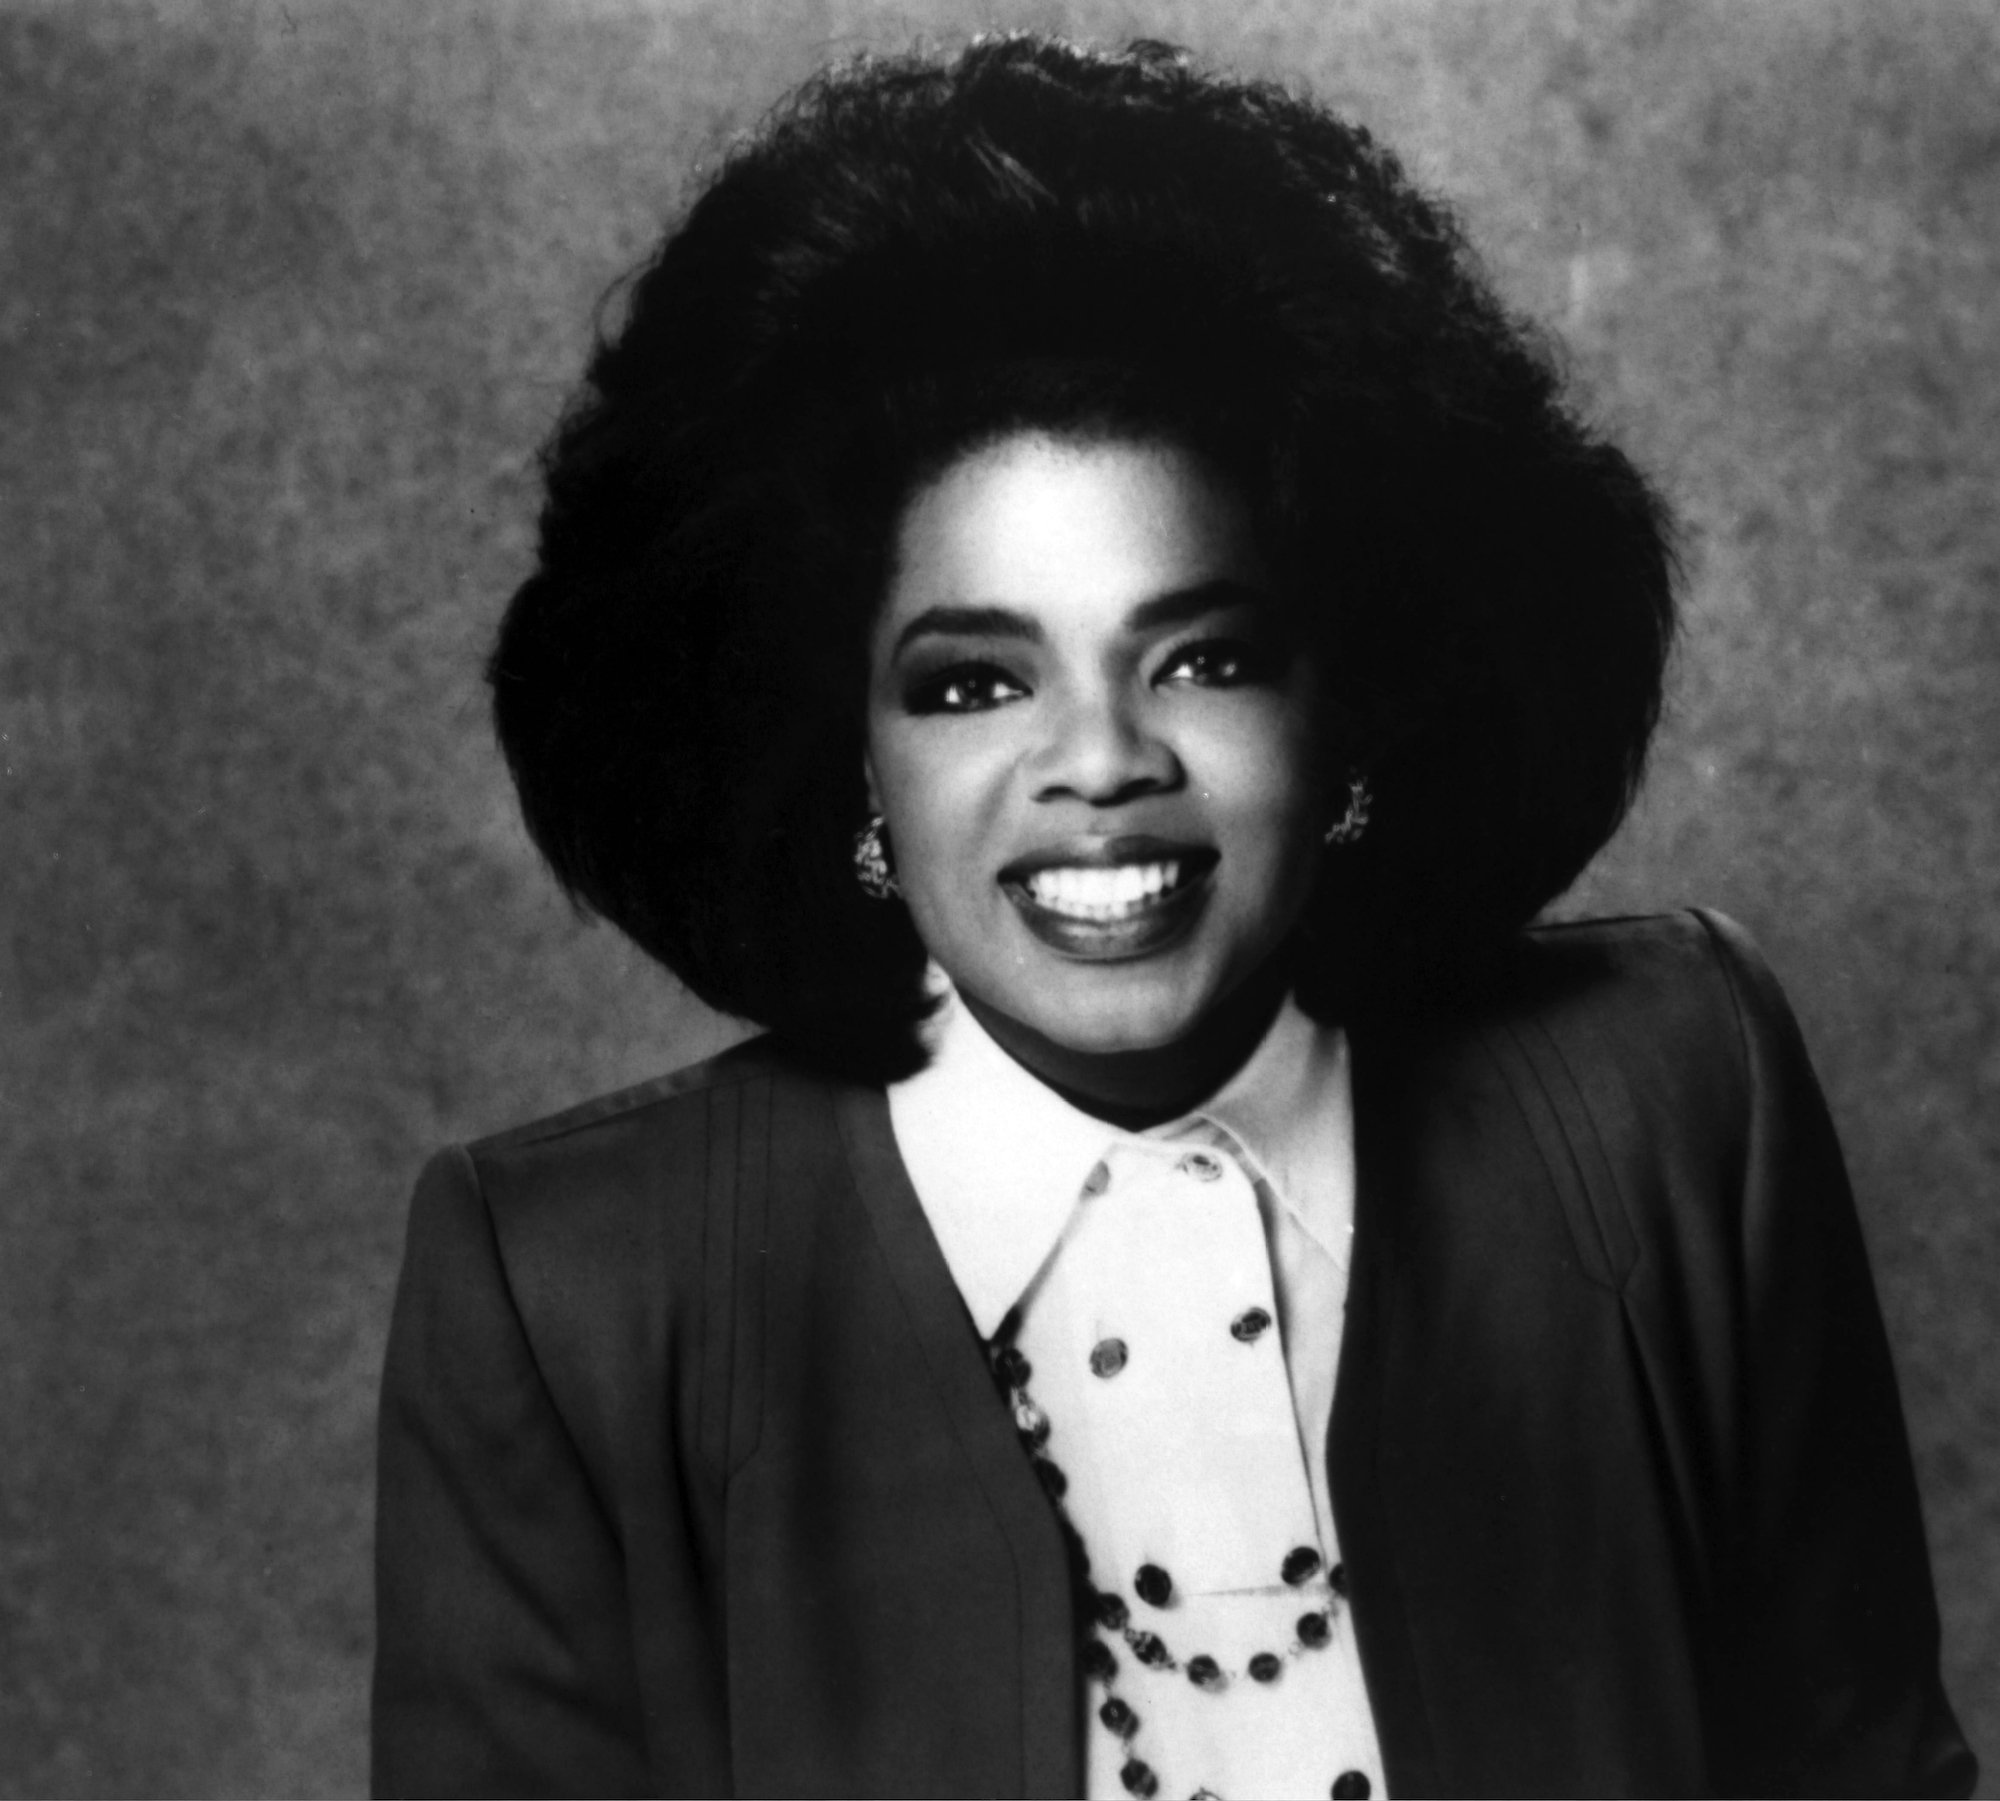 A portrait of Oprah Winfrey in the 1970s